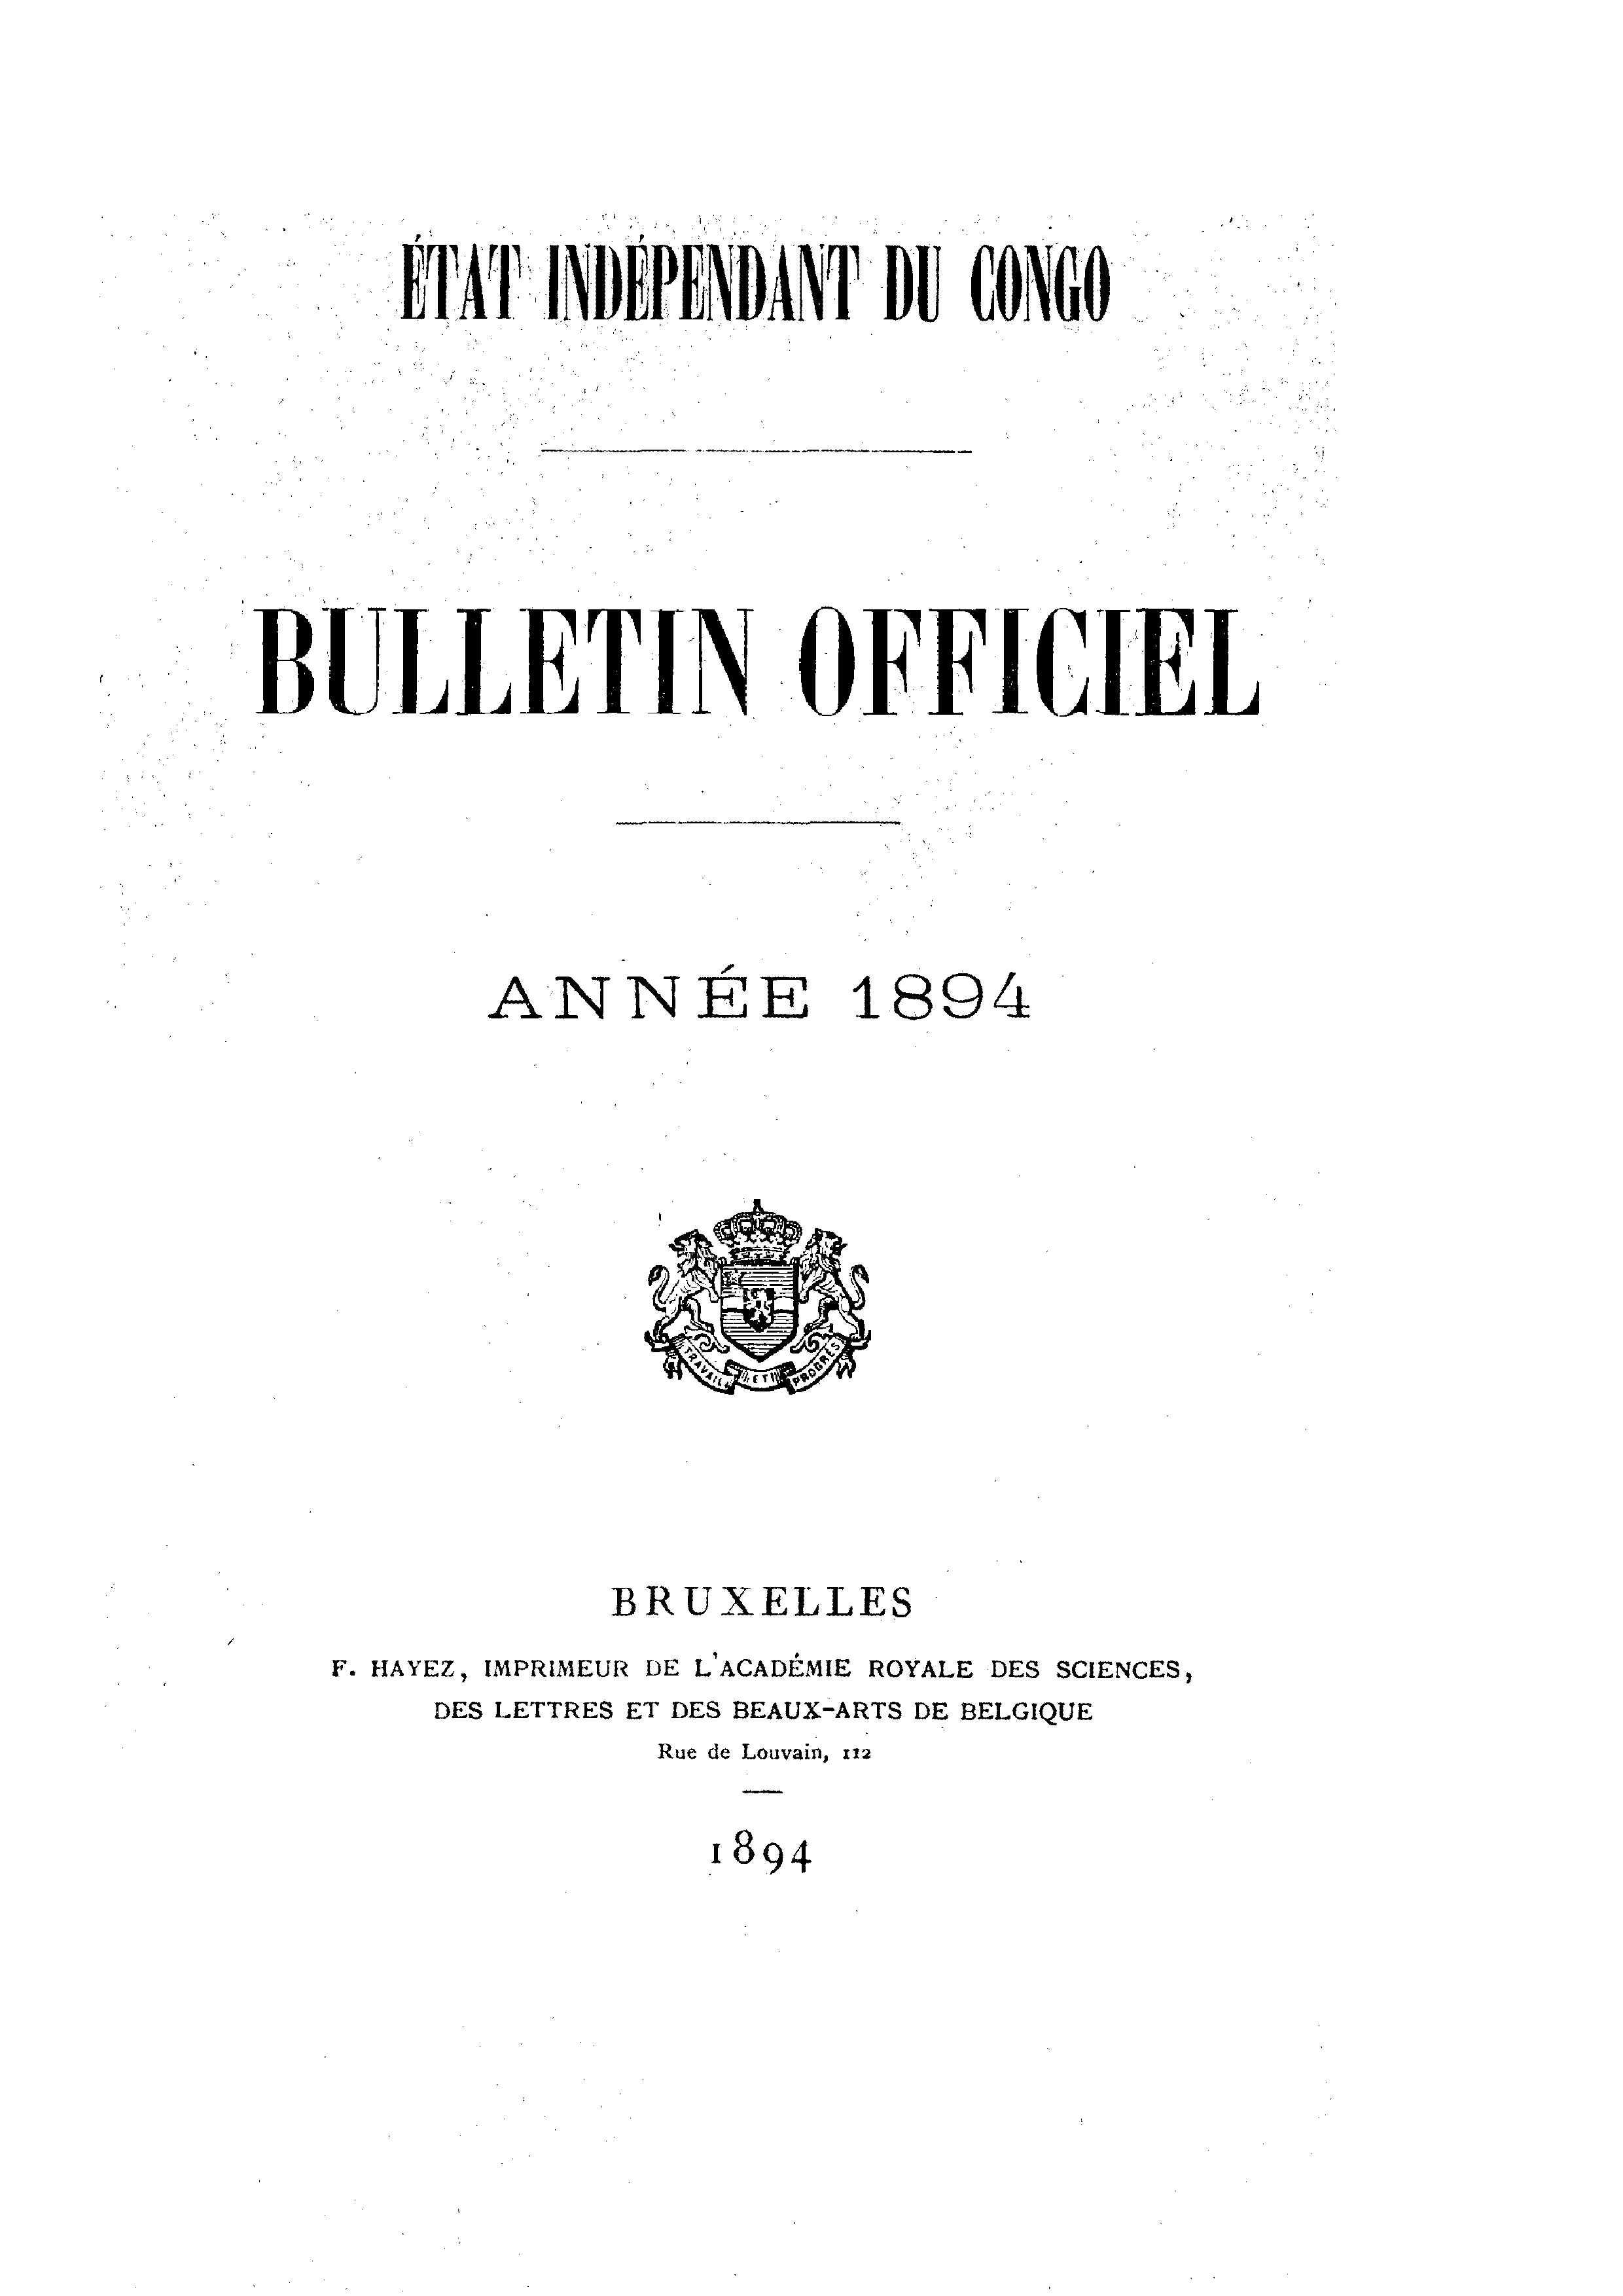 Book cover 202106132409: Etat Indépendant du Congo - roi Léopold II | Etat Indépendant du Congo - Bulletin Officiel – Année 1894